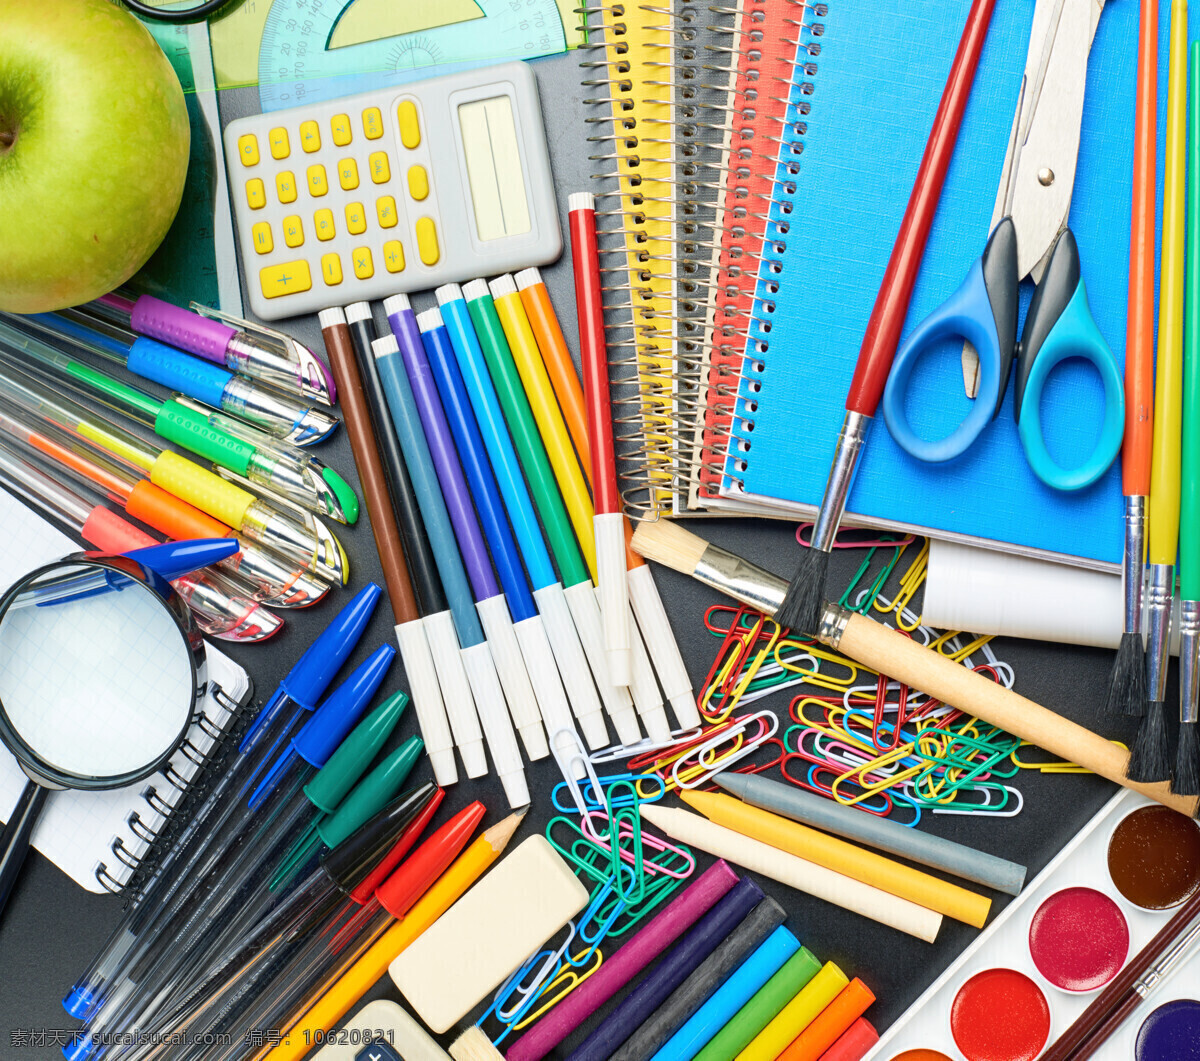 各种 画笔 学习用品 学习用具 圆珠笔 颜料 剪刀 书本 计算器 苹果 办公学习 生活百科